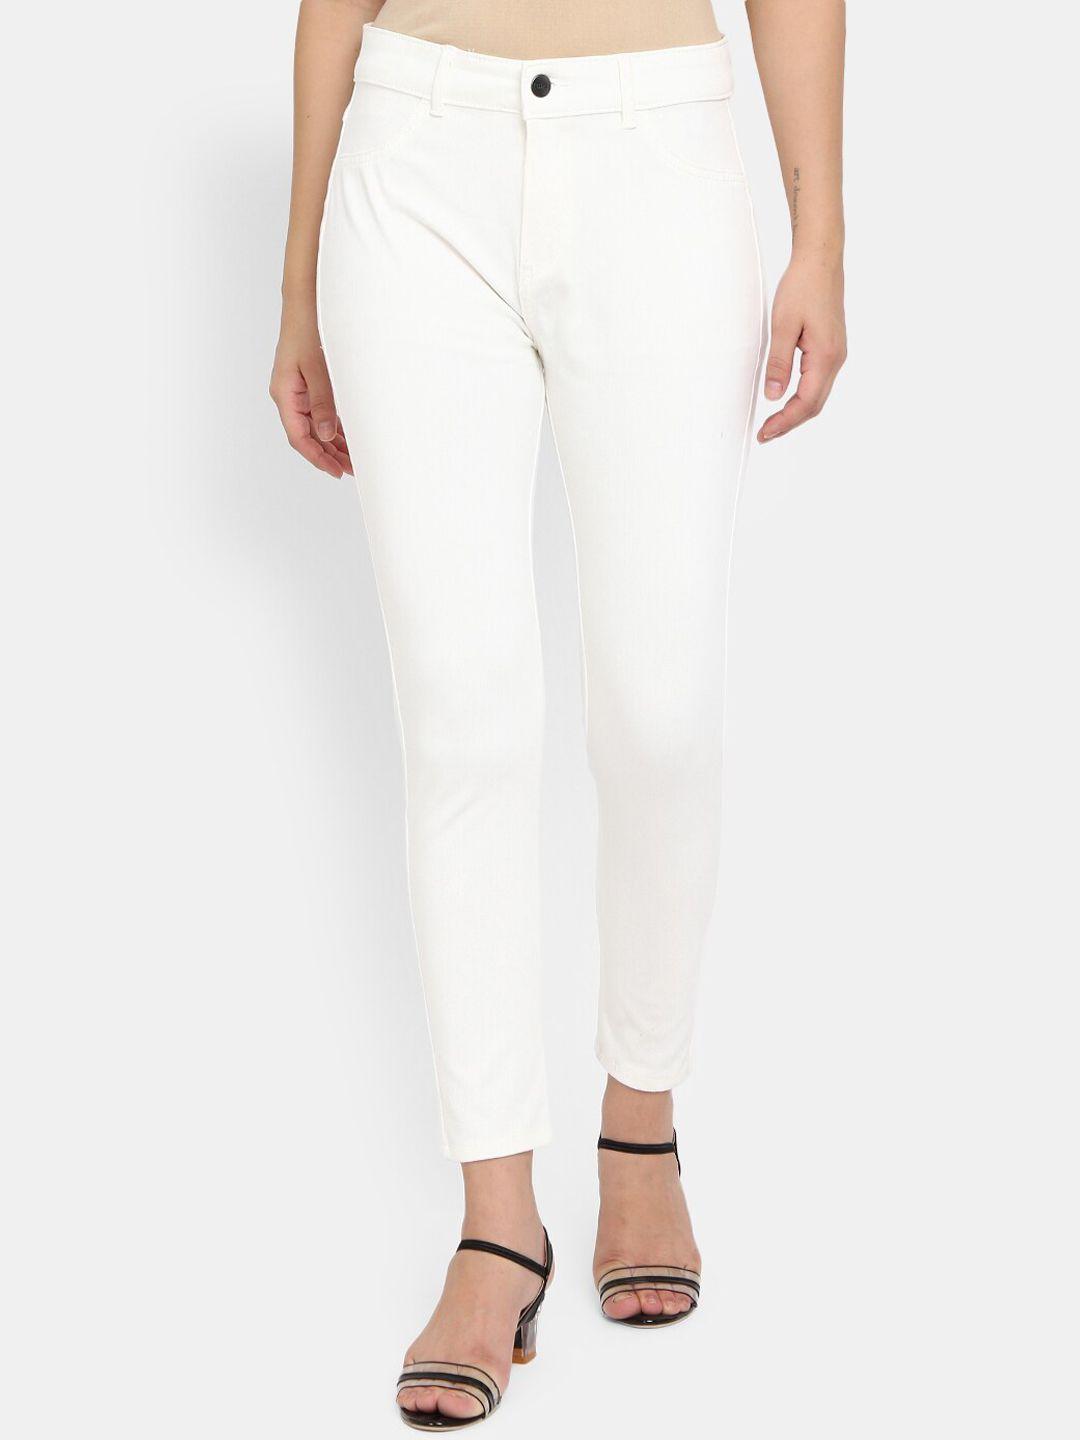 v-mart women white trousers